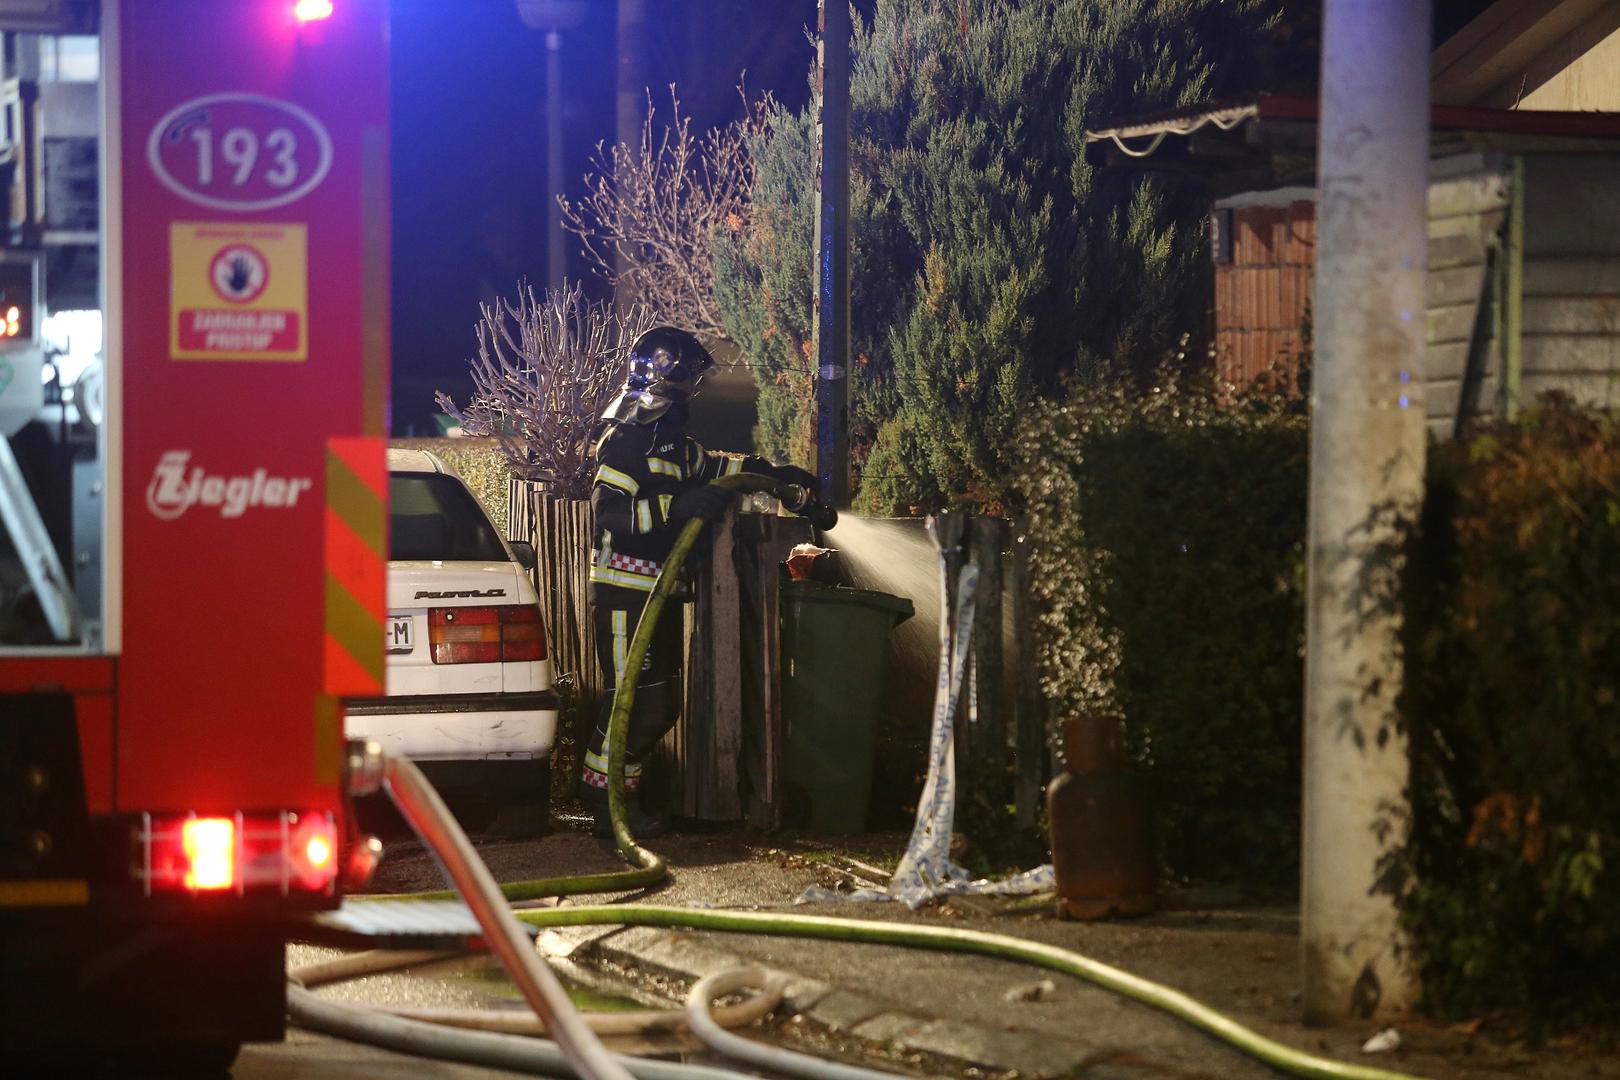 16 vatrogasaca uspjelo je ugasiti požar, a u kući je živjela mlada obitelj s dvoje djec, piše 24sata.